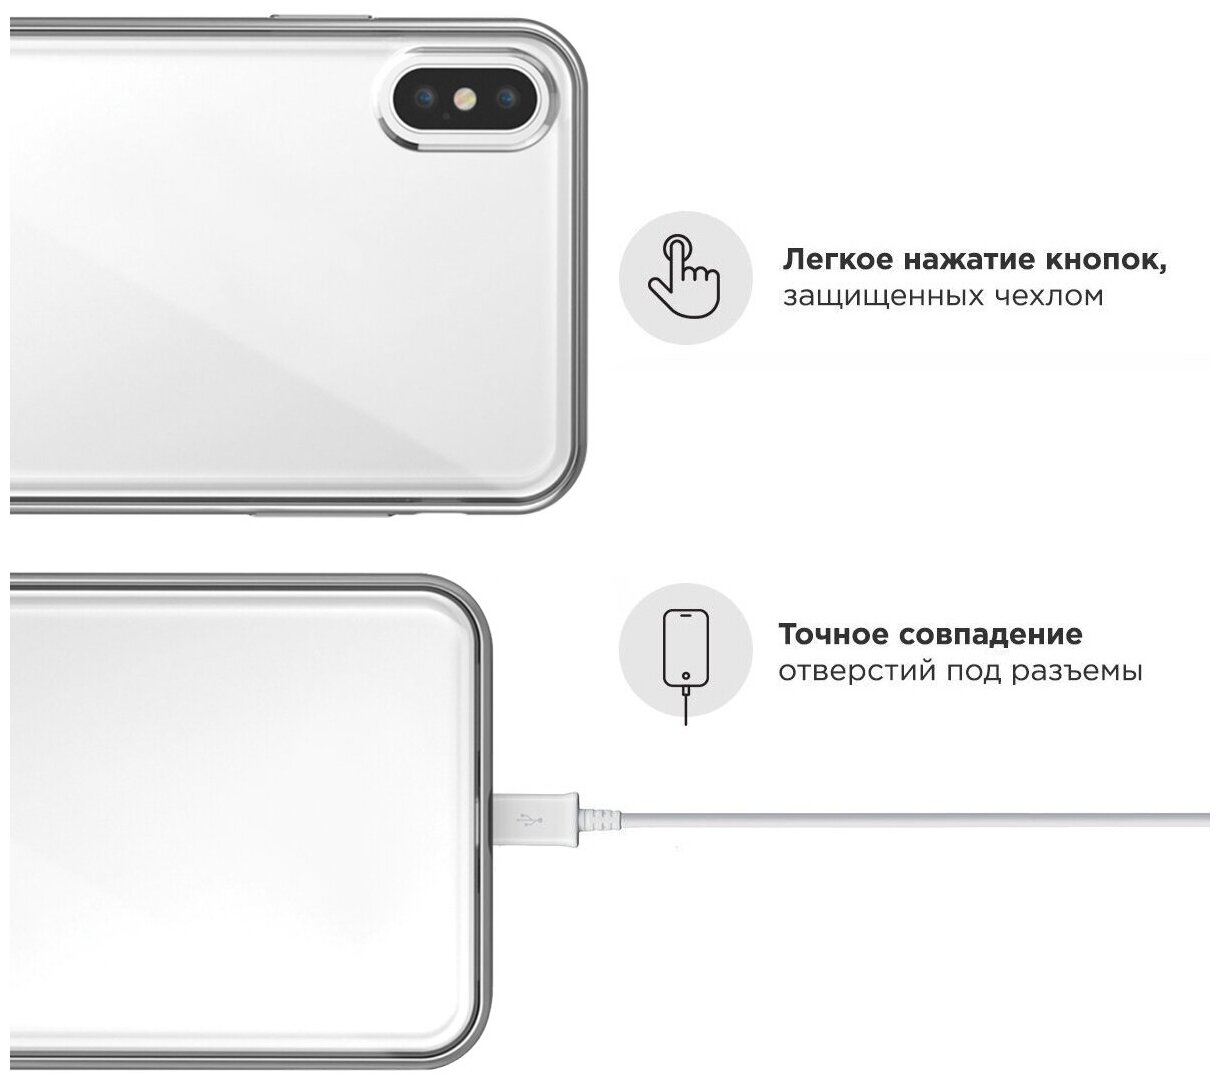 Прозрачный силиконовый чехол с кристаллами Lux для iPhone XS Max Знак зодиака Близнецы Gemini для Айфон 10С Макс